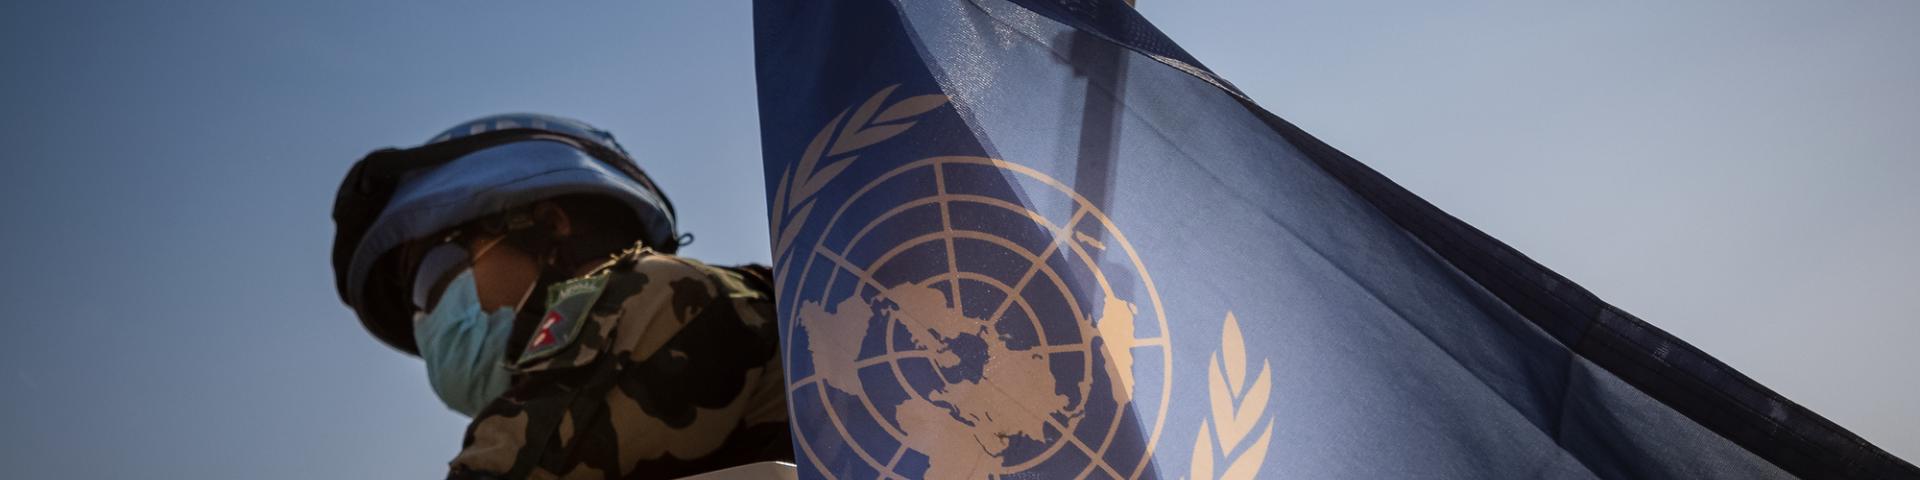 UN Peacekeeper holding a UN flag